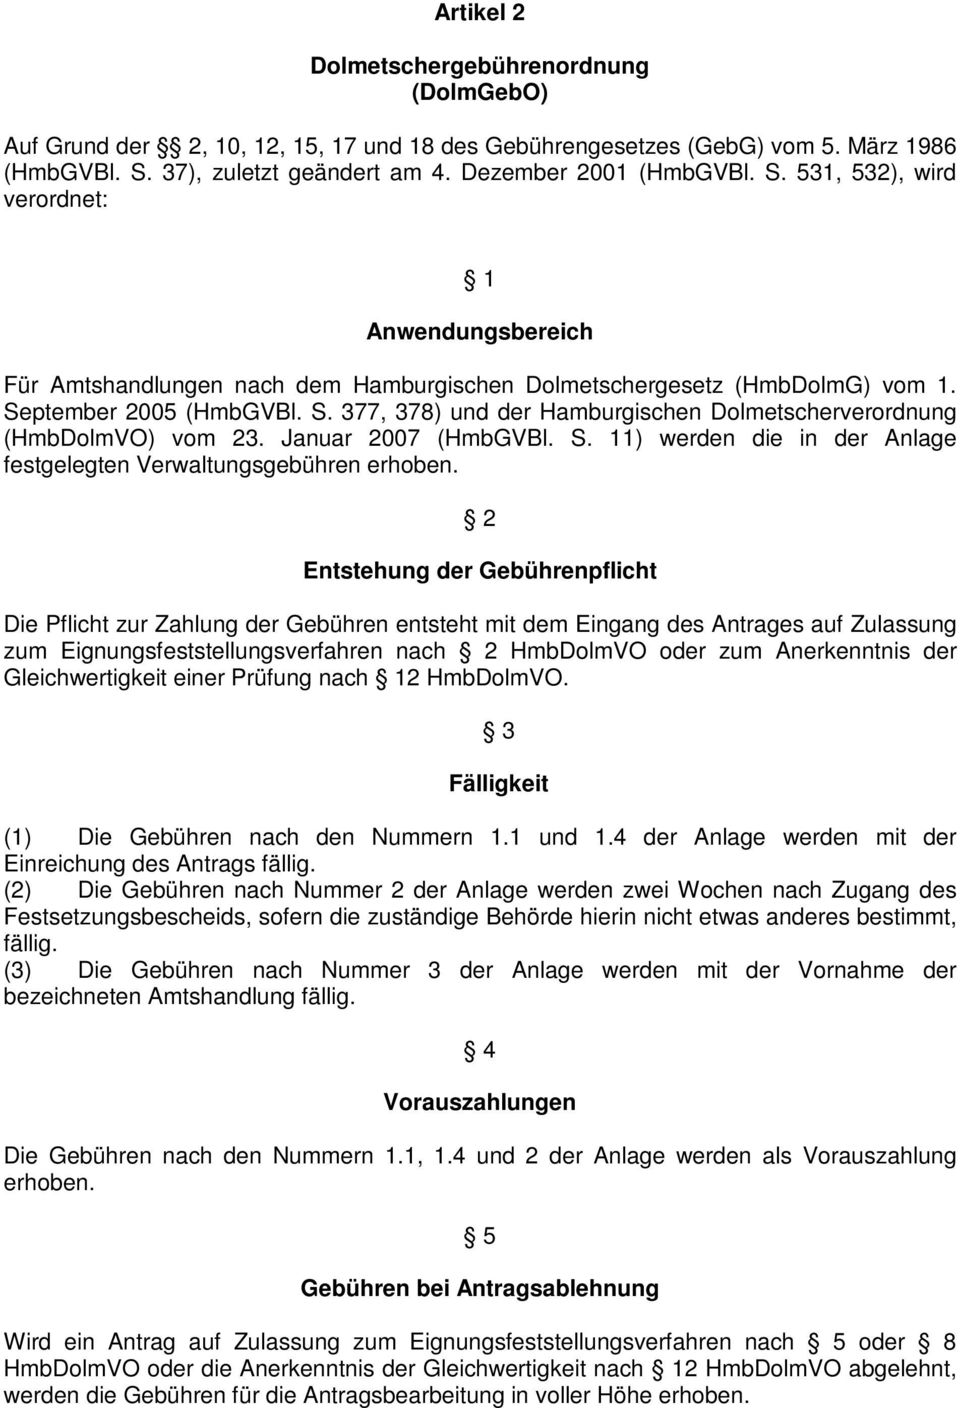 September 2005 (HmbGVBl. S. 377, 378) und der Hamburgischen Dolmetscherverordnung (HmbDolmVO) vom 23. Januar 2007 (HmbGVBl. S. 11) werden die in der Anlage festgelegten Verwaltungsgebühren erhoben.